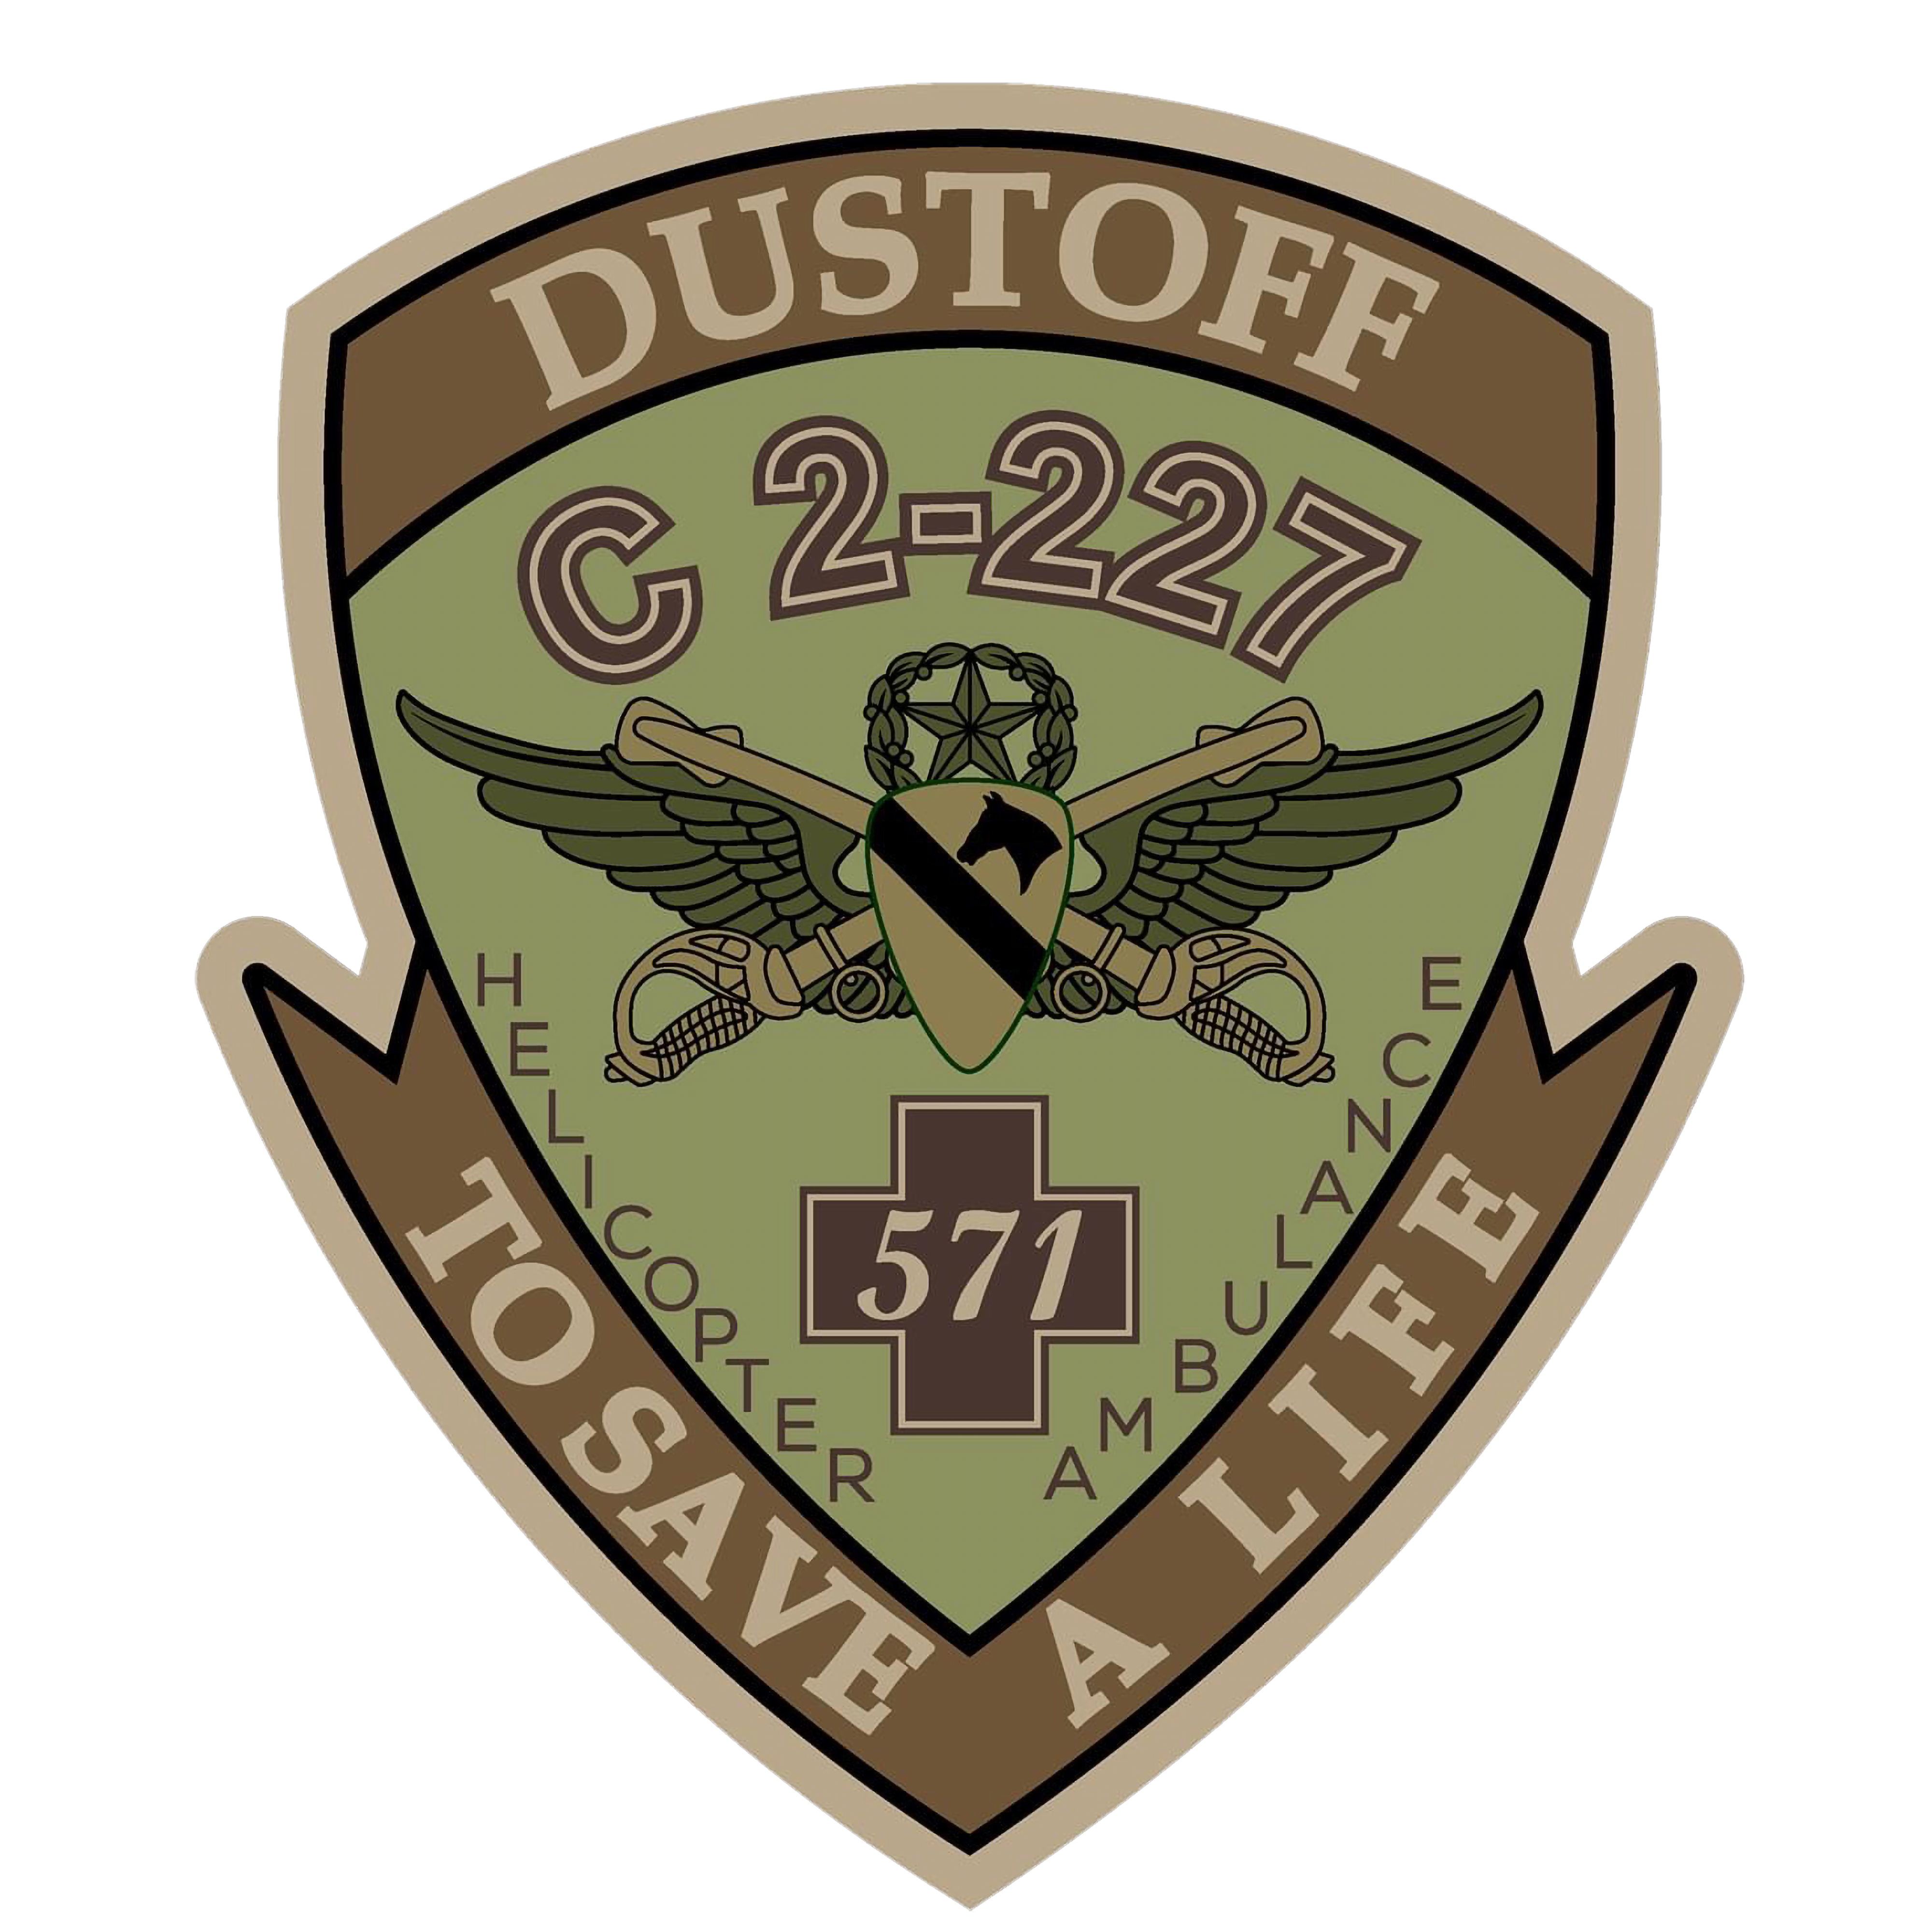 C Co, 2-227 AVN REGT "Longhorn Dustoff"